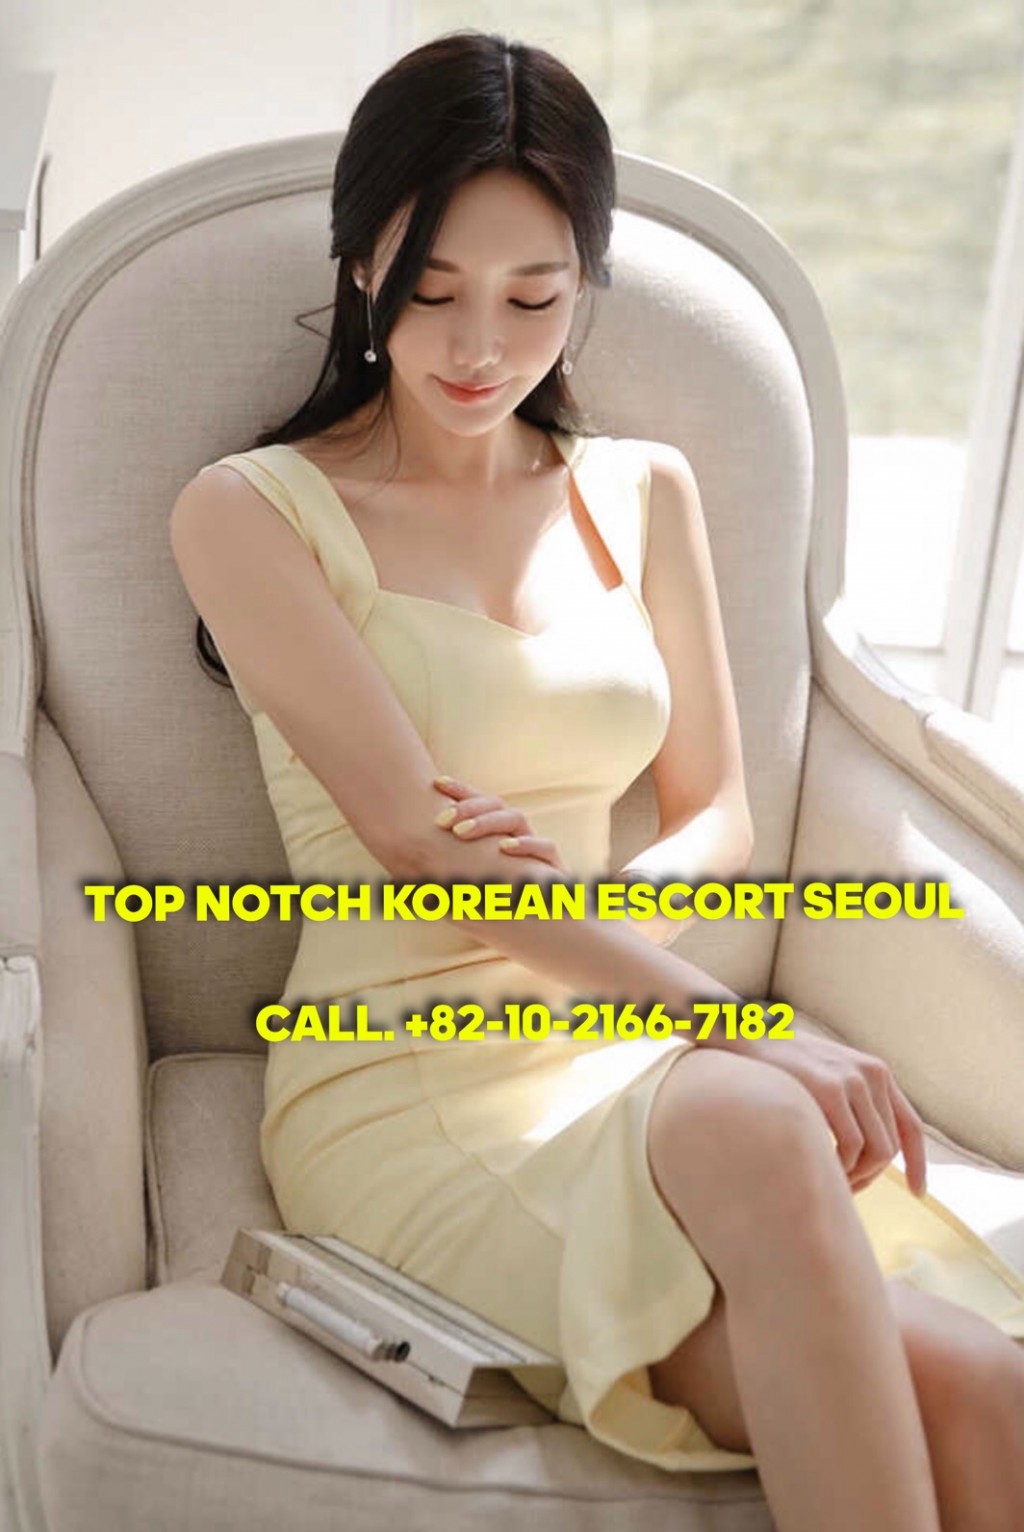 Prostitutes in Suwon